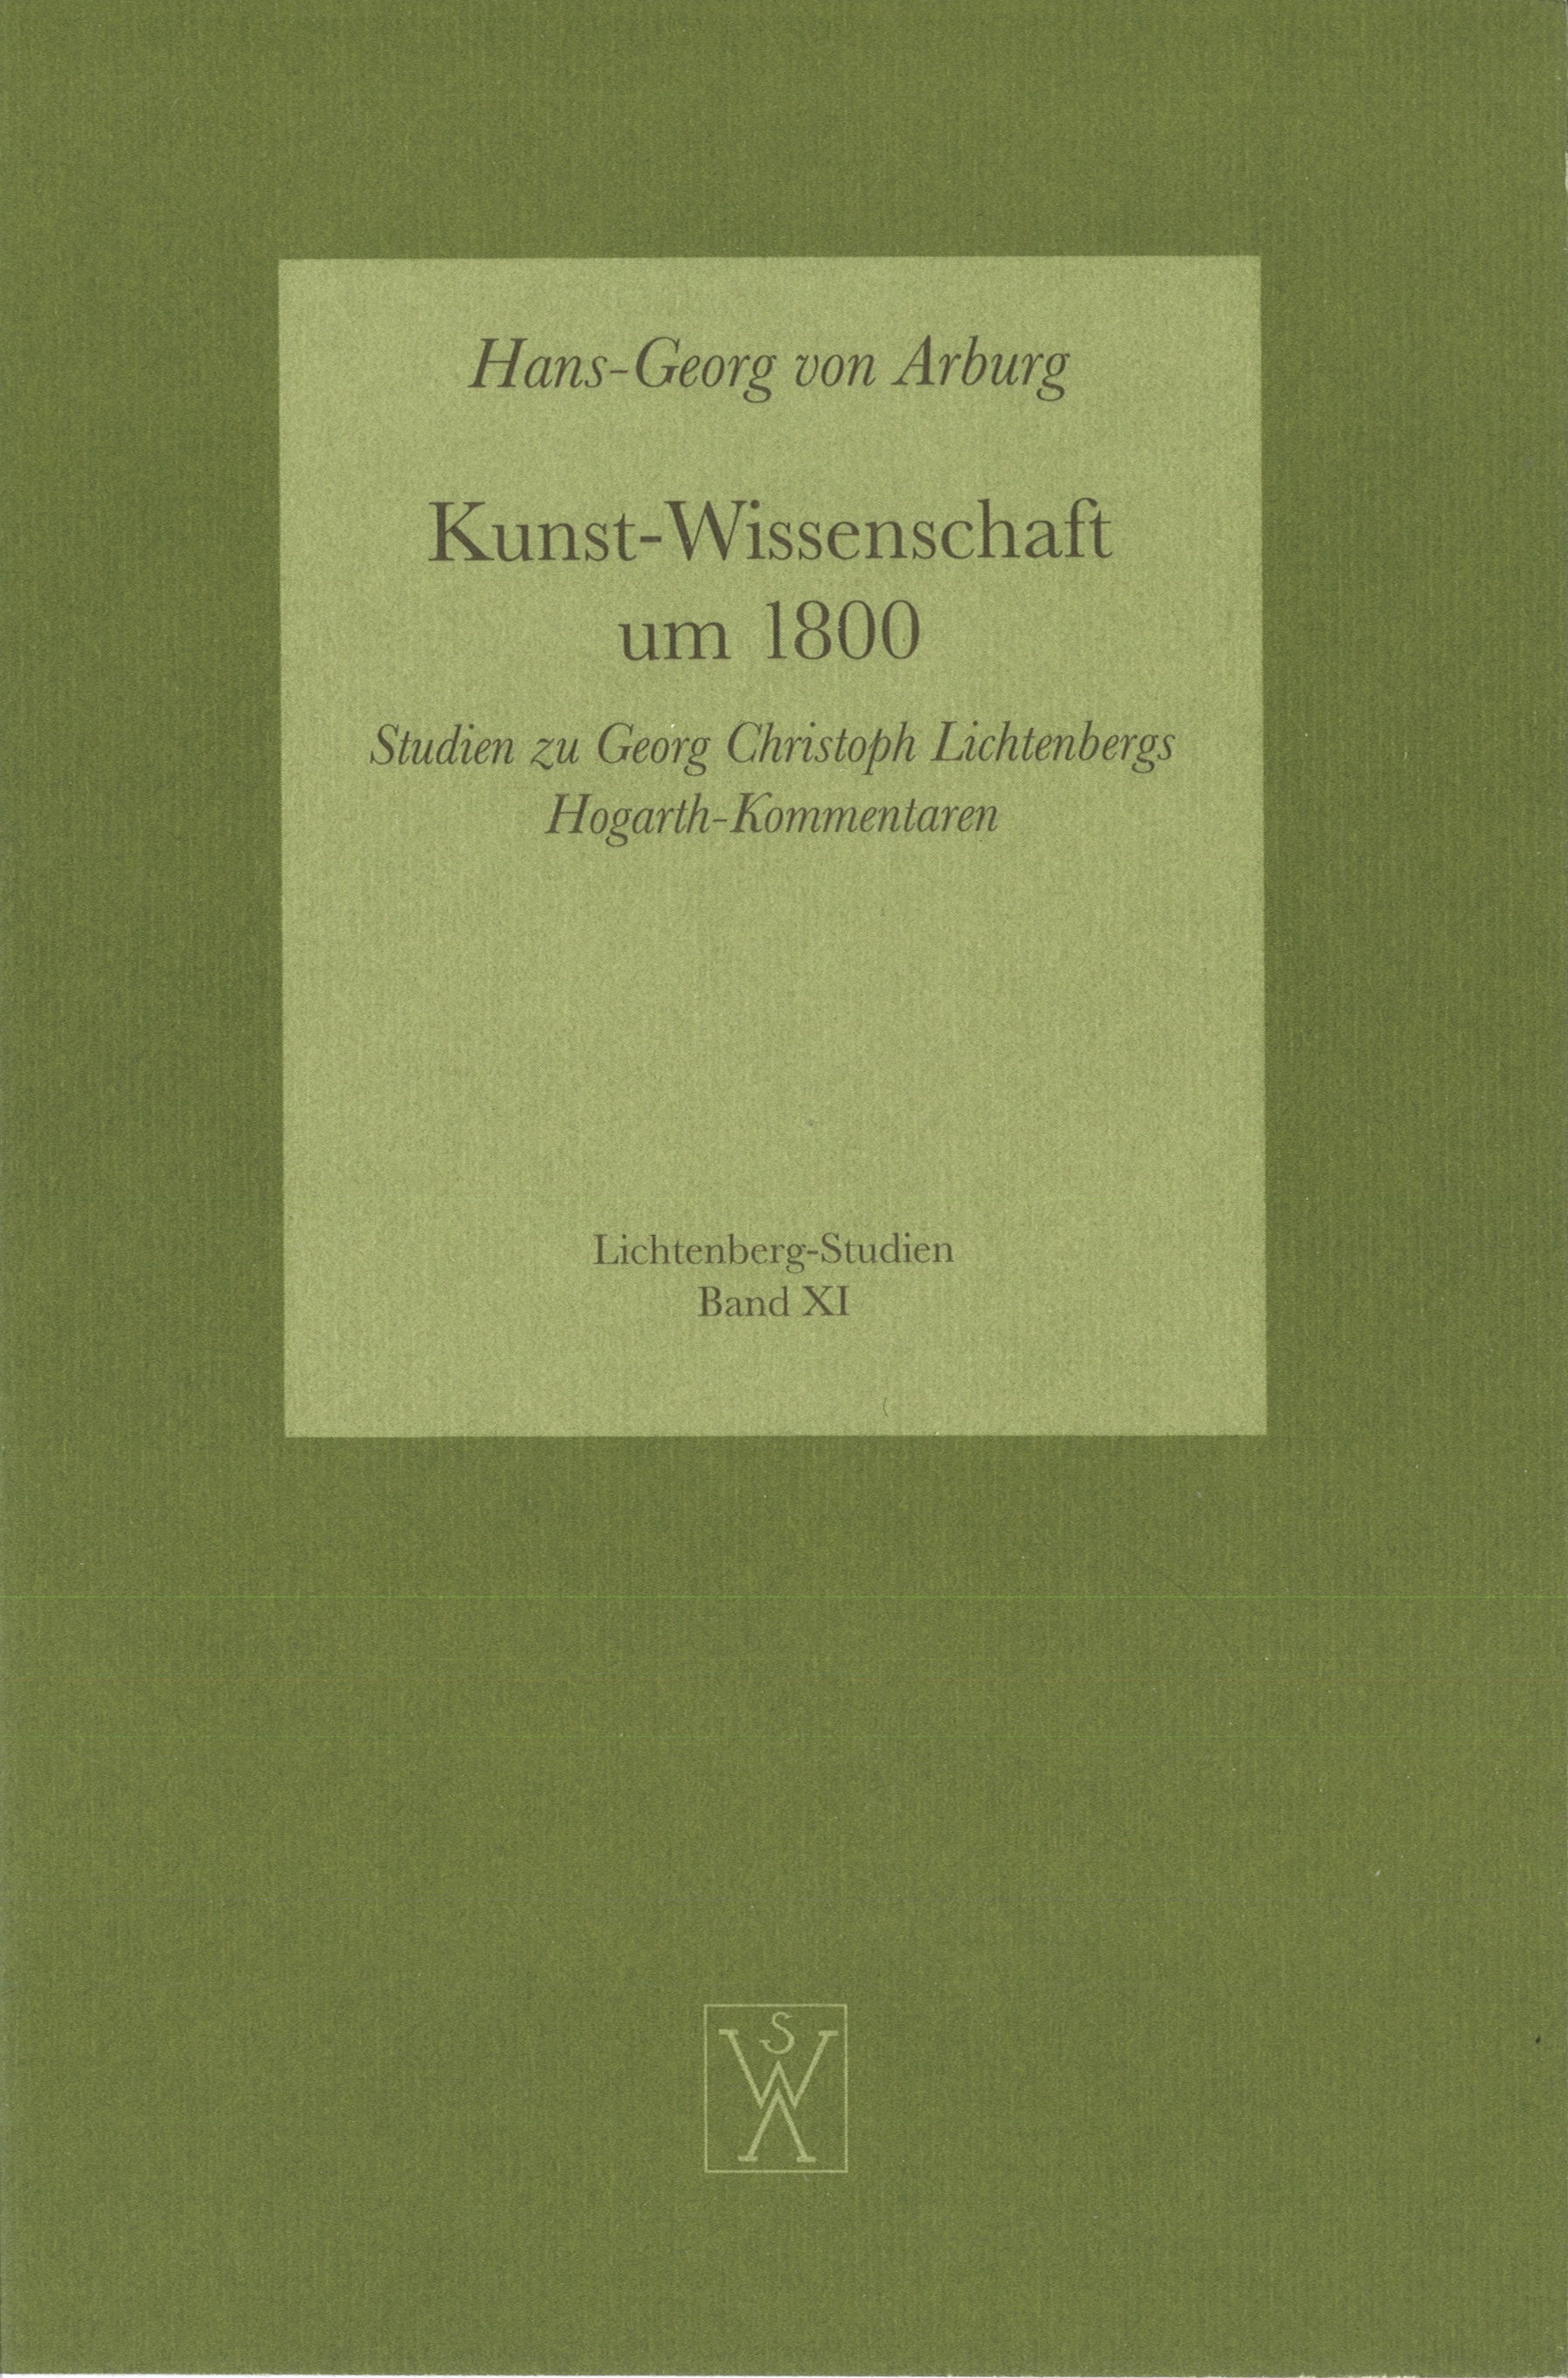 1998_HGvA_Kunst-Wissenschaft um 1800.jpg